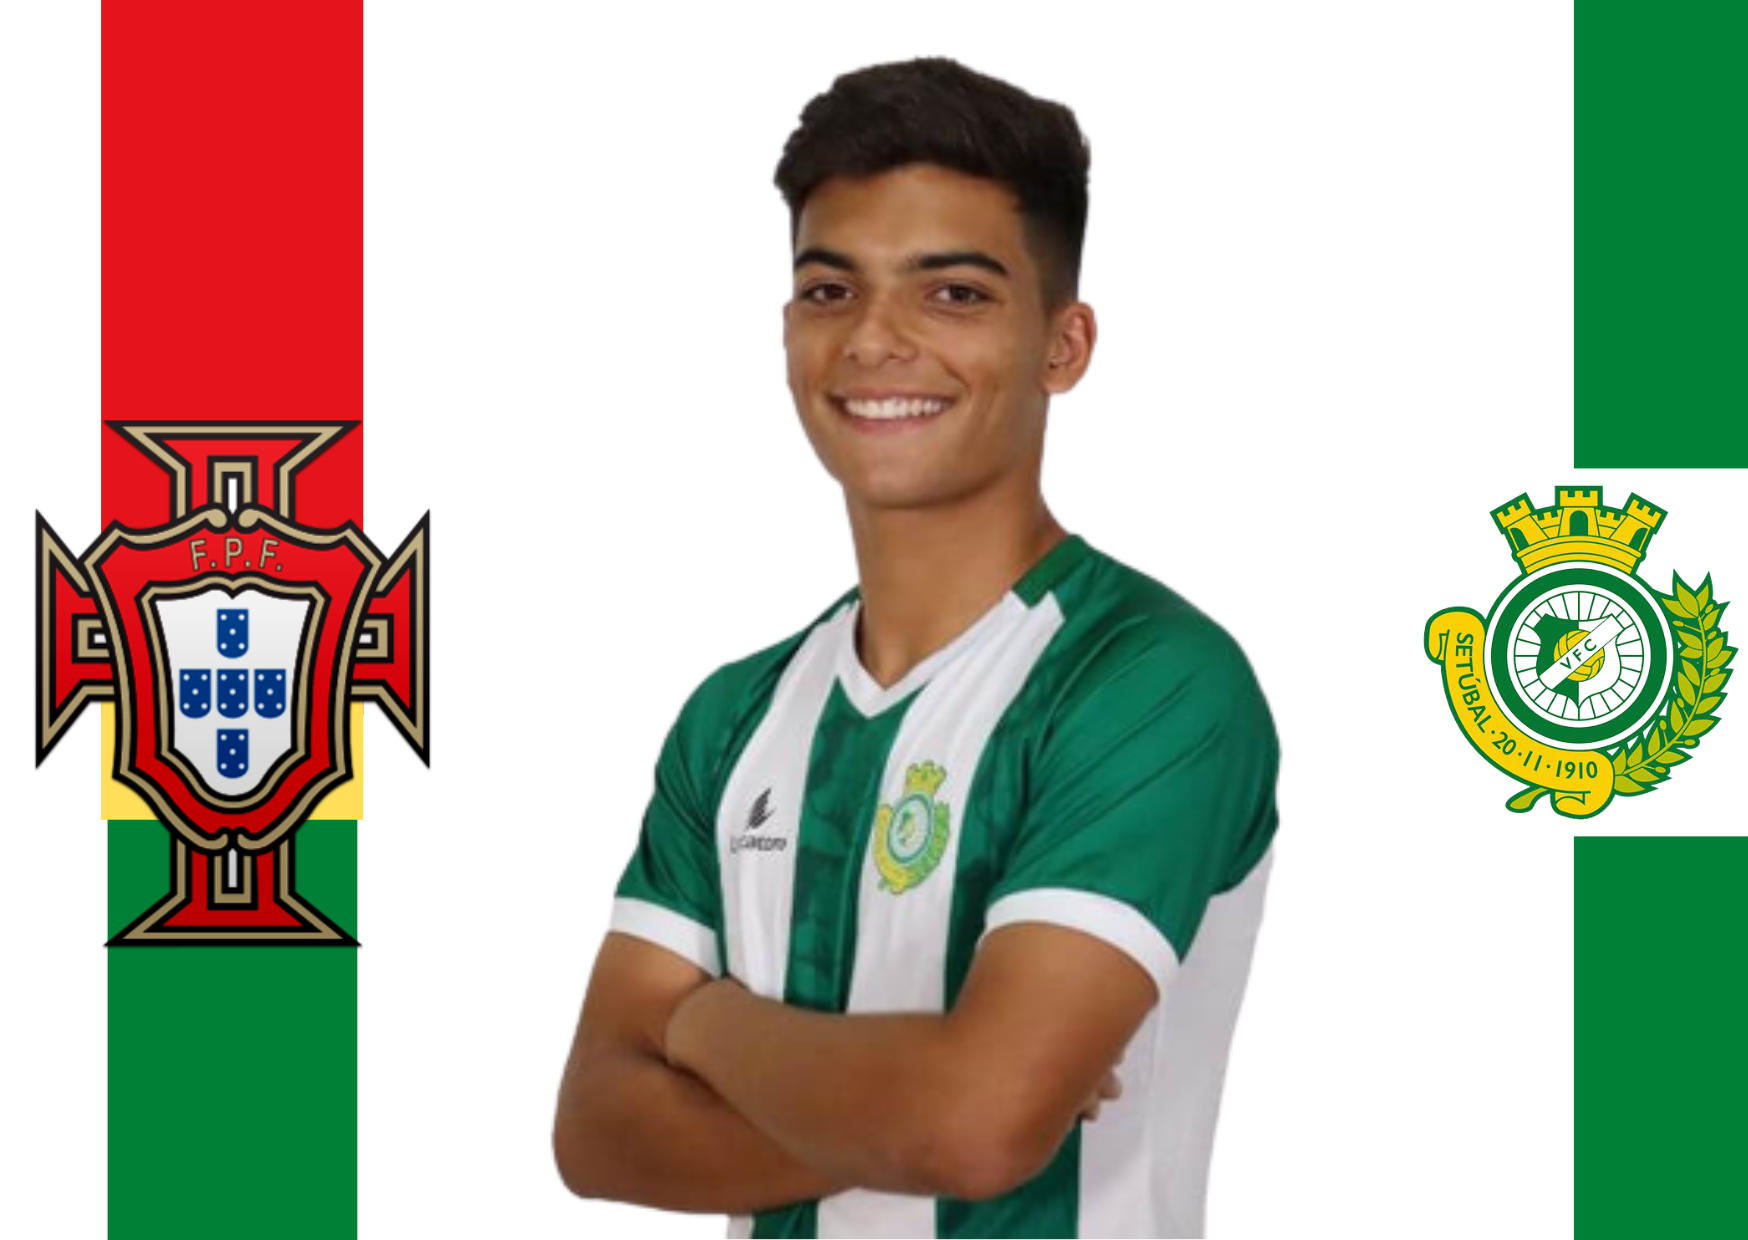 Daniel Carvalho (Vitória FC) convocado para os sub-20 de Portugal